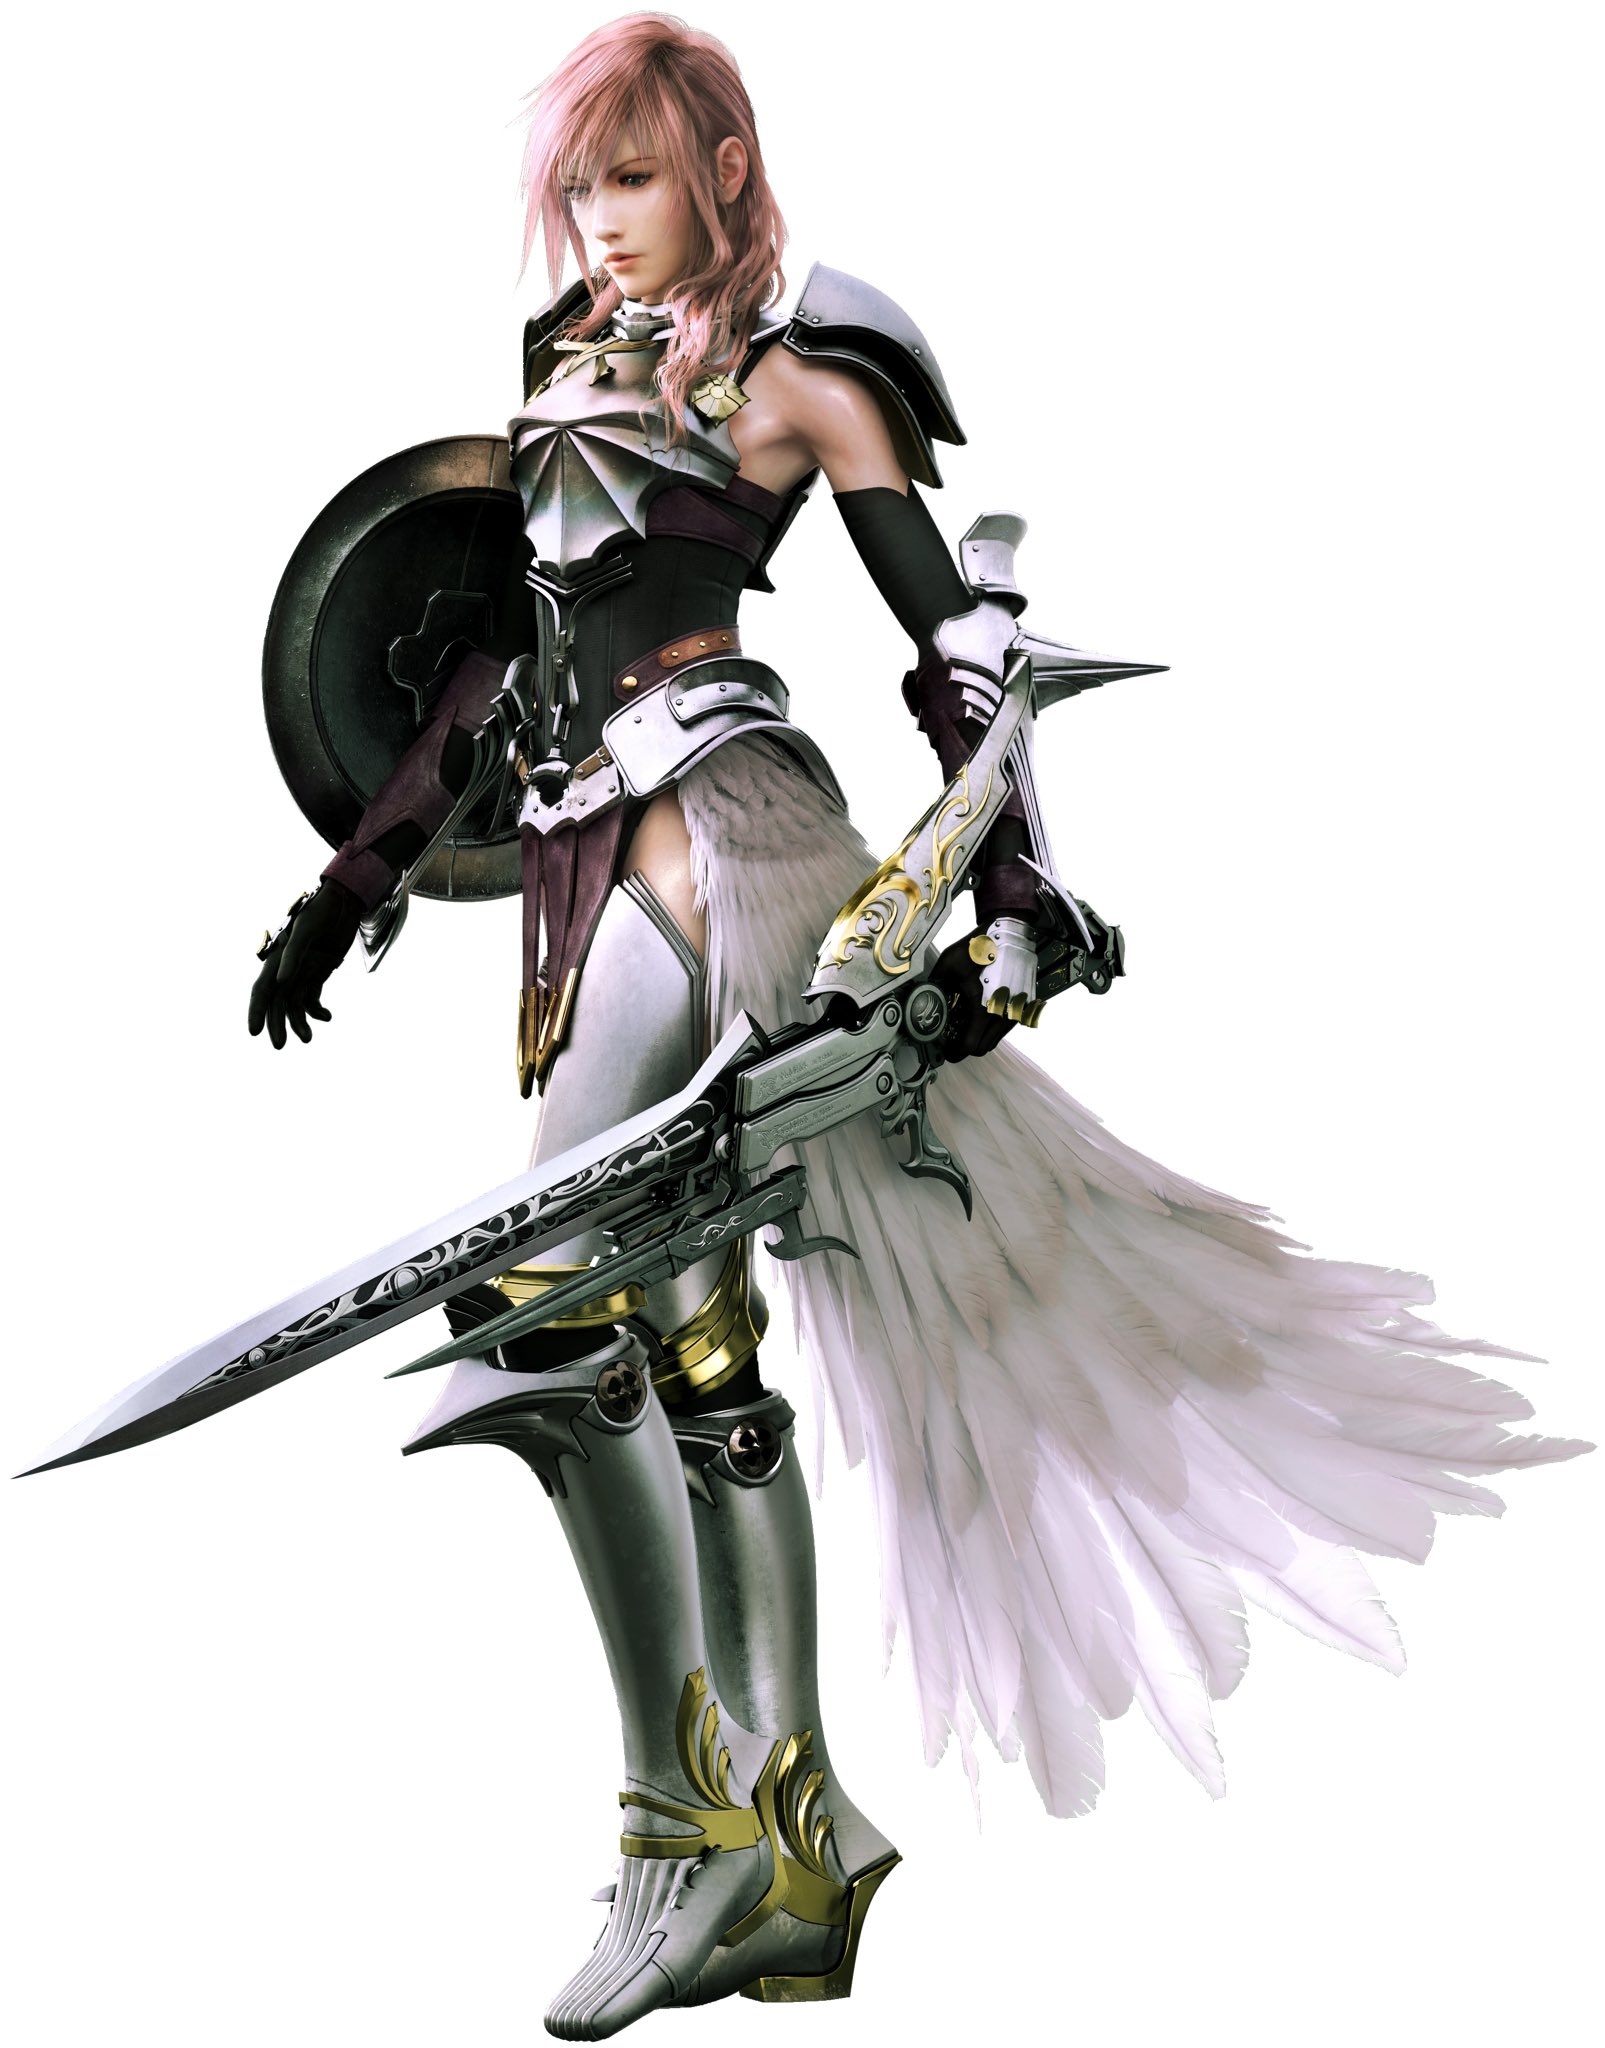 Final Fantasy Lightning - Final Fantasy & Video Games Background